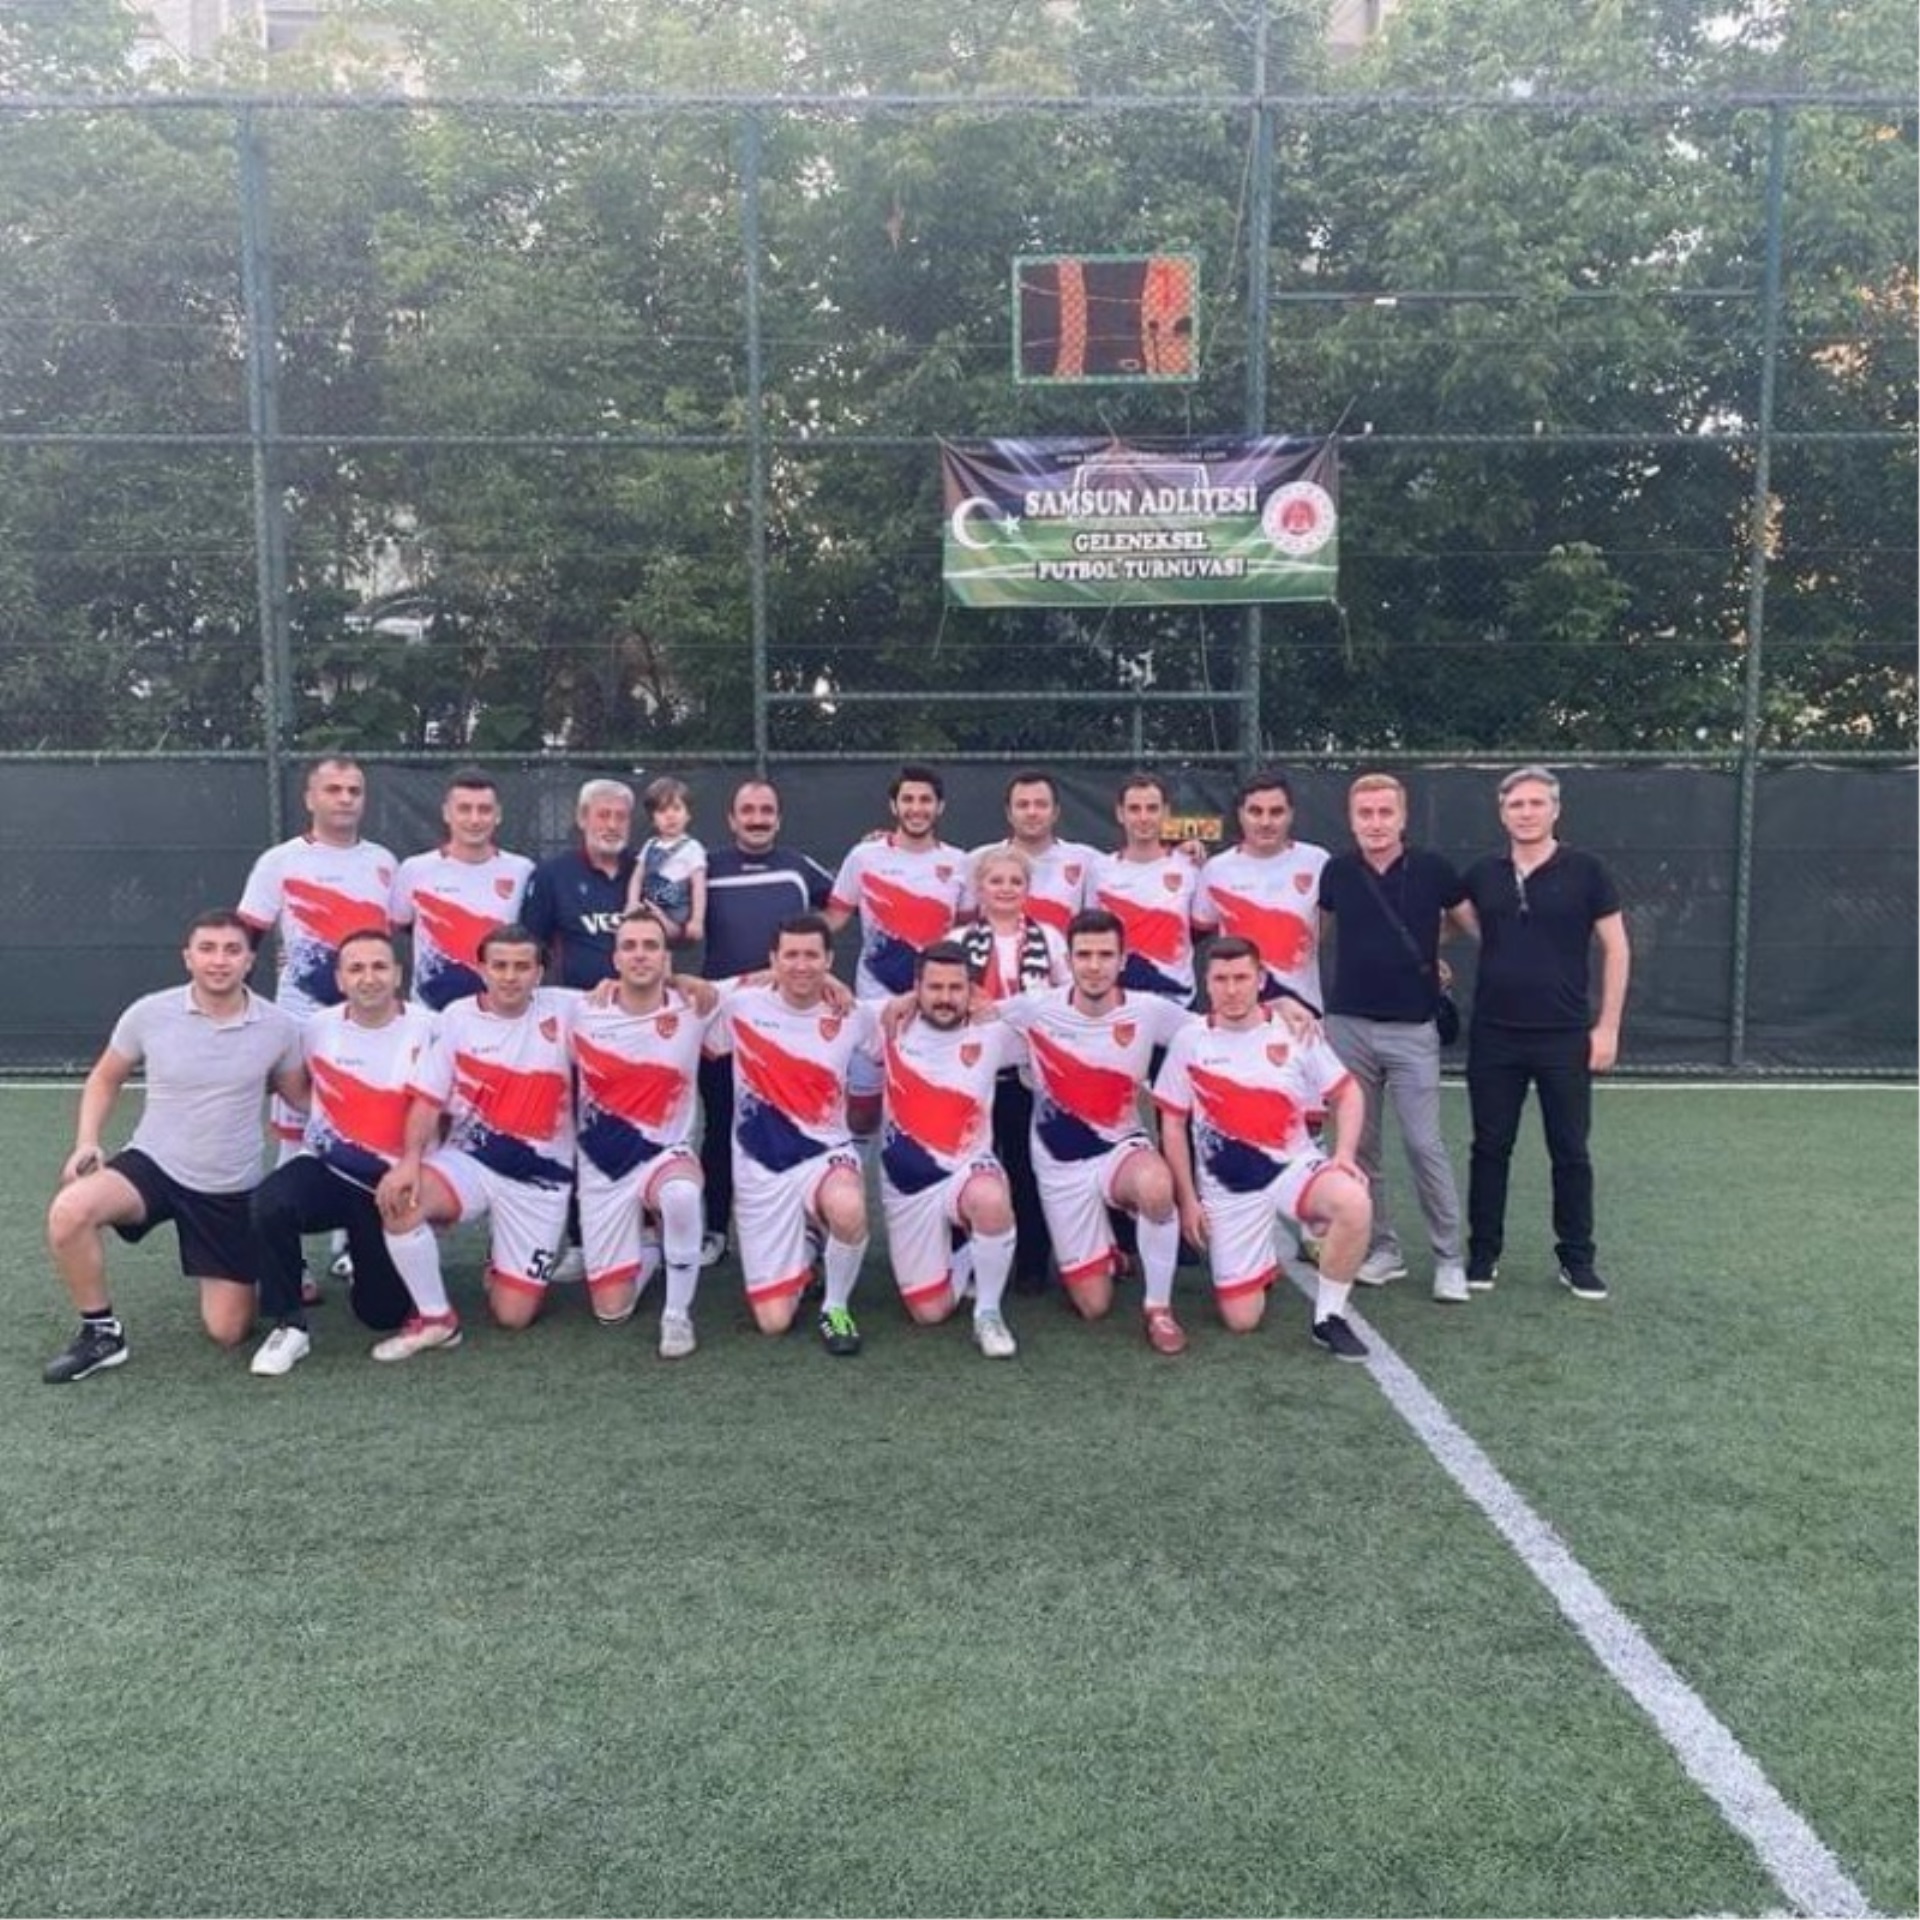 Samsun Adalet Çalışanları 10.Geleneksel Futbol Turnuvasında kazanan takım "ELİT SPOR " oldu